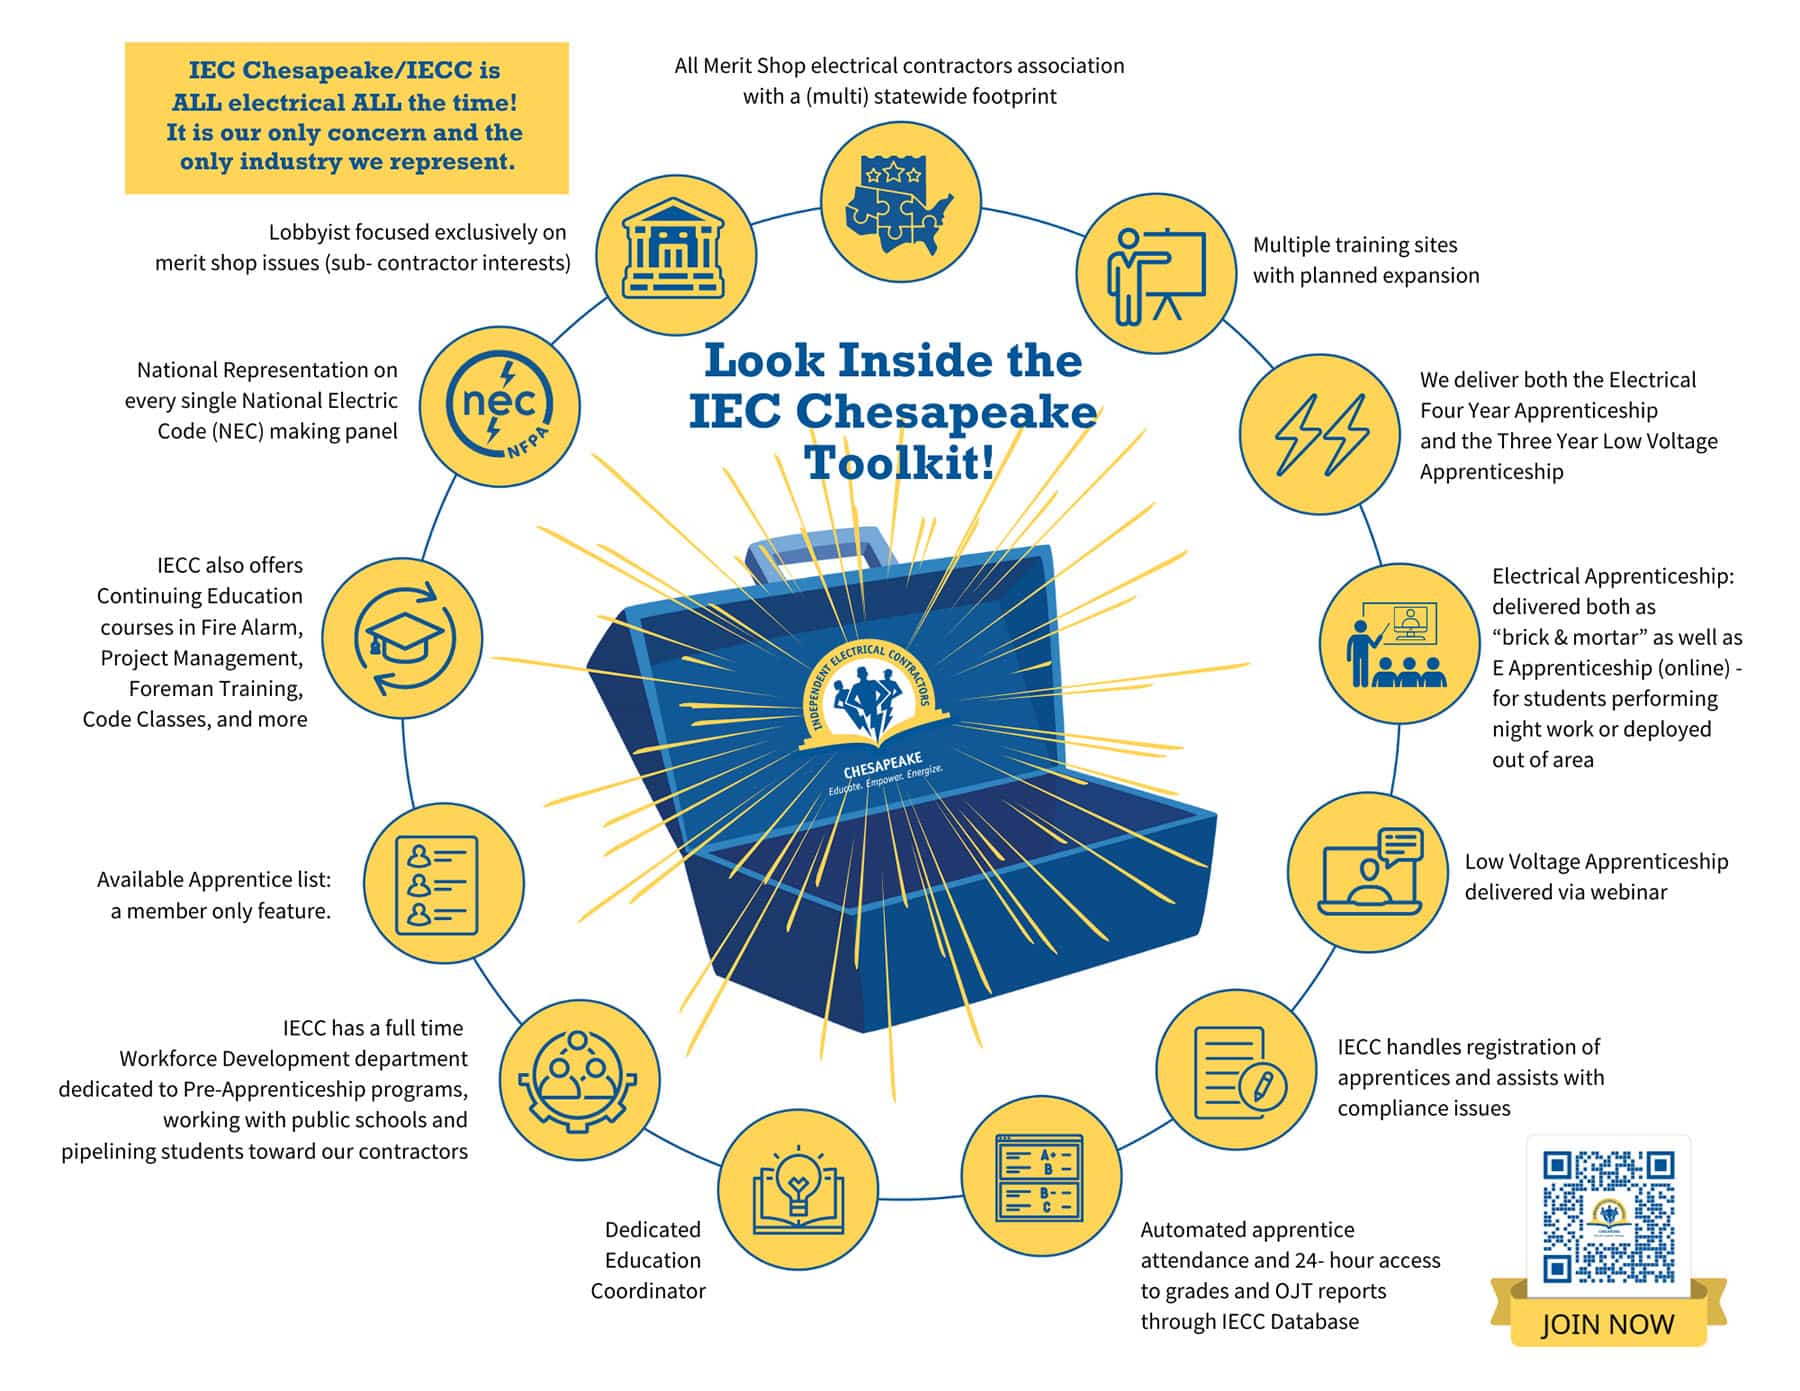 IECC membership benefits